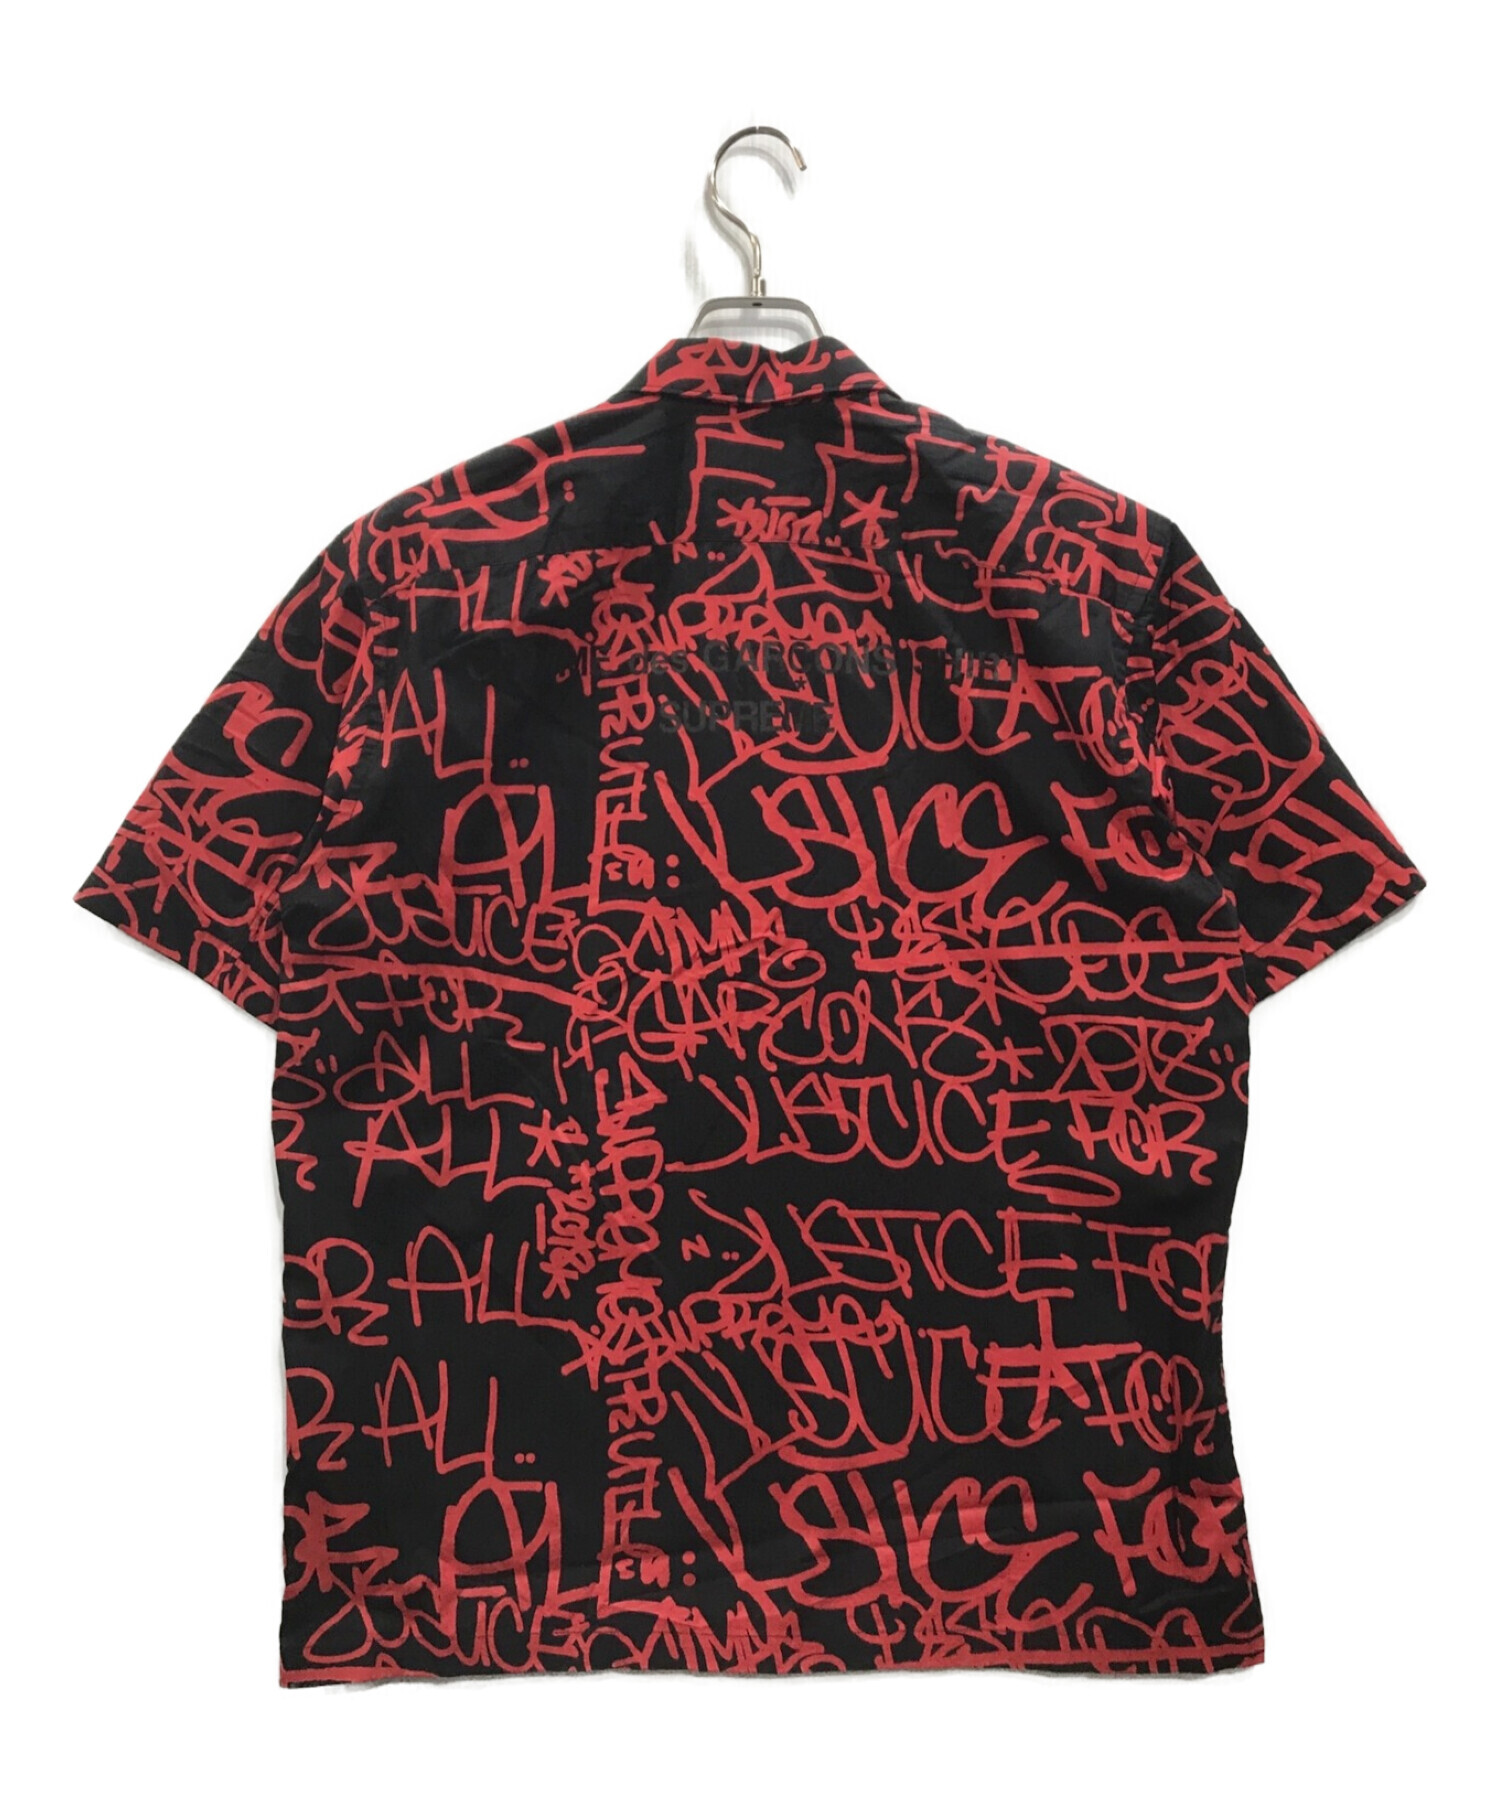 Supreme (シュプリーム) COMME des GARCONS SHIRT (コムデギャルソンシャツ) 18AW Graphic Shirt  グラフィックシャツ ブラック×レッド サイズ:M